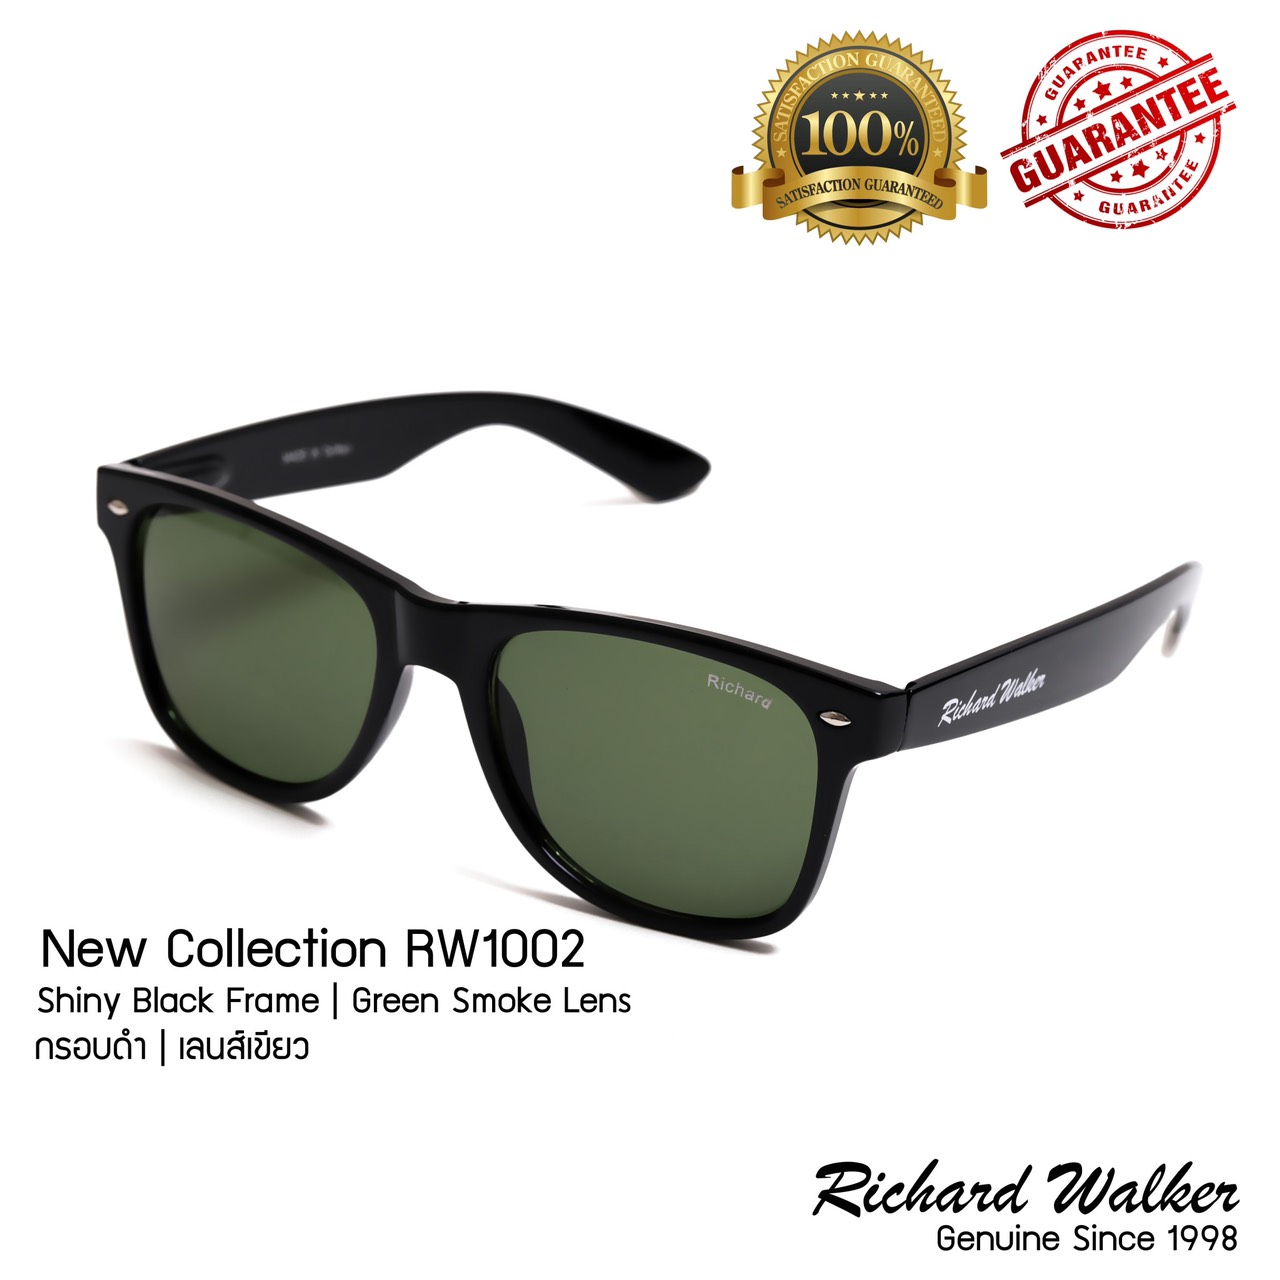 แว่นตากันแดด Richard Walker Sunglasses รุ่น RW1002 New Collection 400UV Mattle Black Frame Smoke Lens กรอบดำ เลนส์เขียว แว่นตากันแดด แฟชั่น ขายดีที่สุด